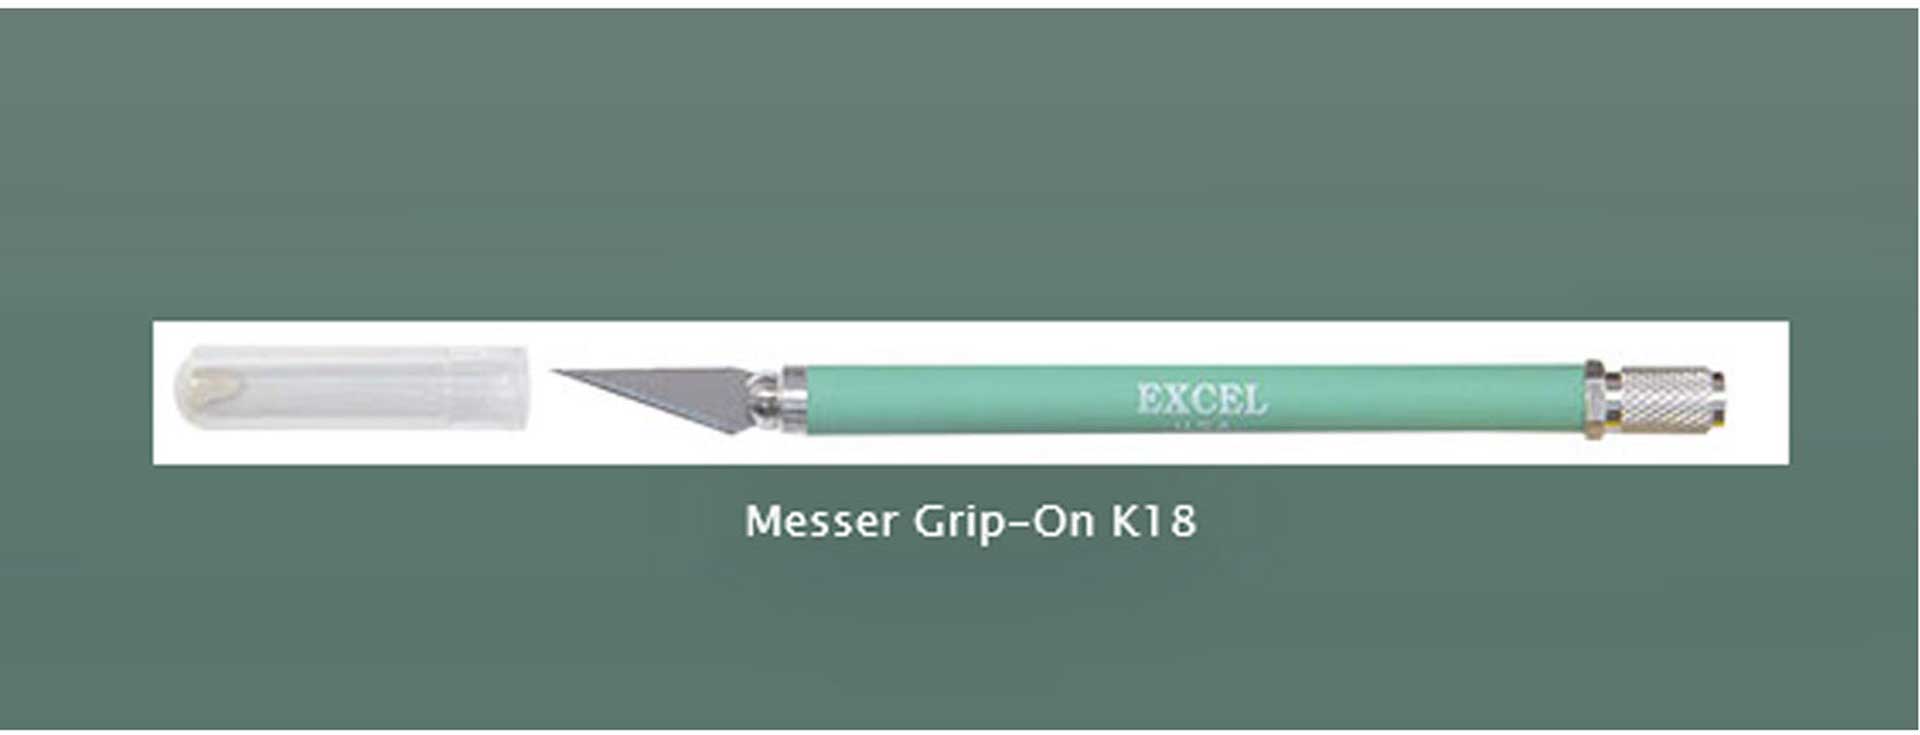 EXCEL MESSER GRIP-ON K18 PRÄZISIONSMESSER